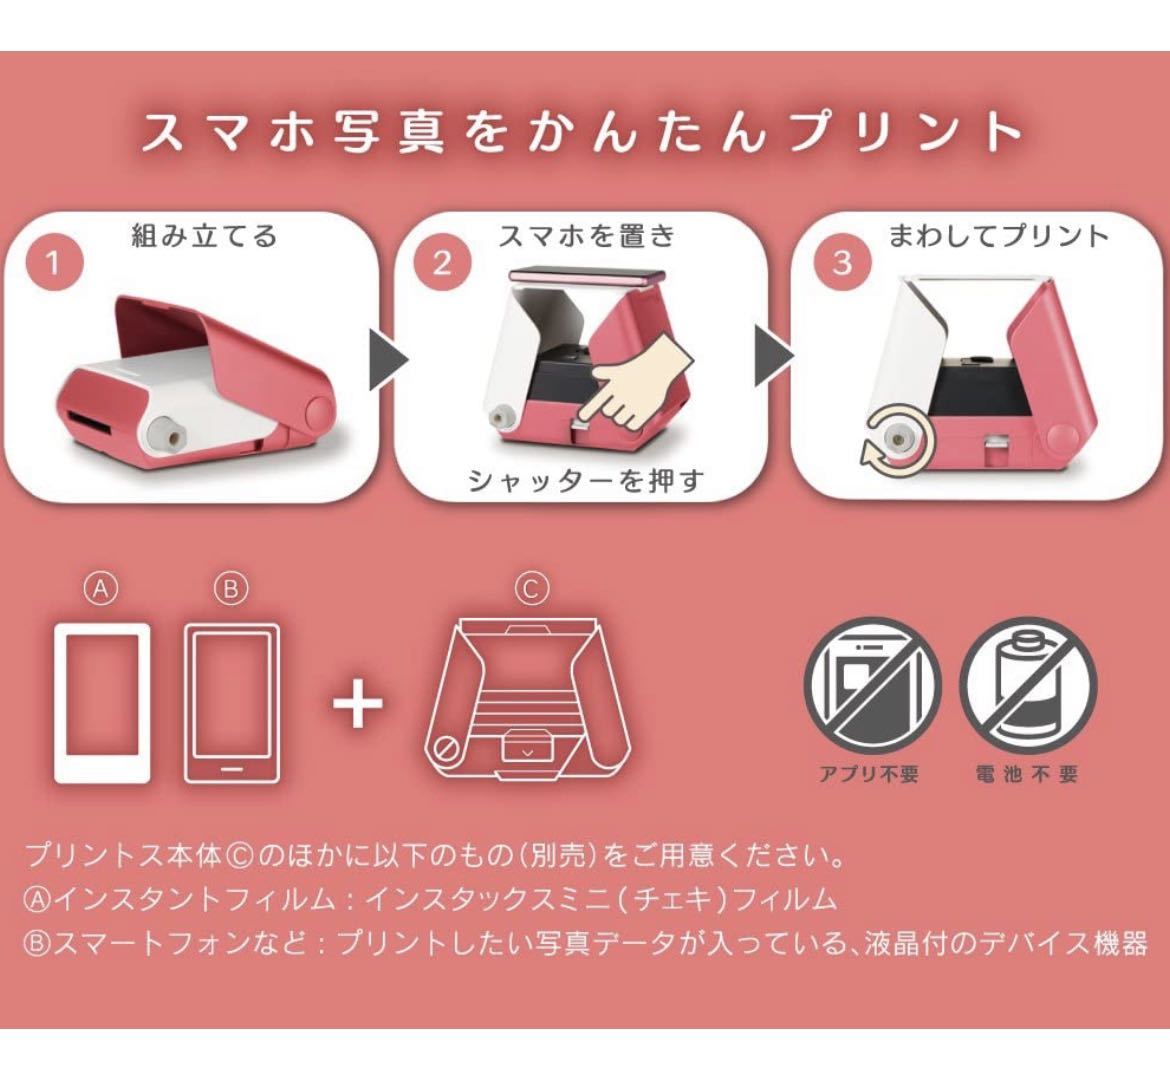  новый товар не использовался Takara Tommy смартфон для принтер принт sSAKURA( Sakura ) Cheki плёнка использование TPJ-03SA розовый SORA